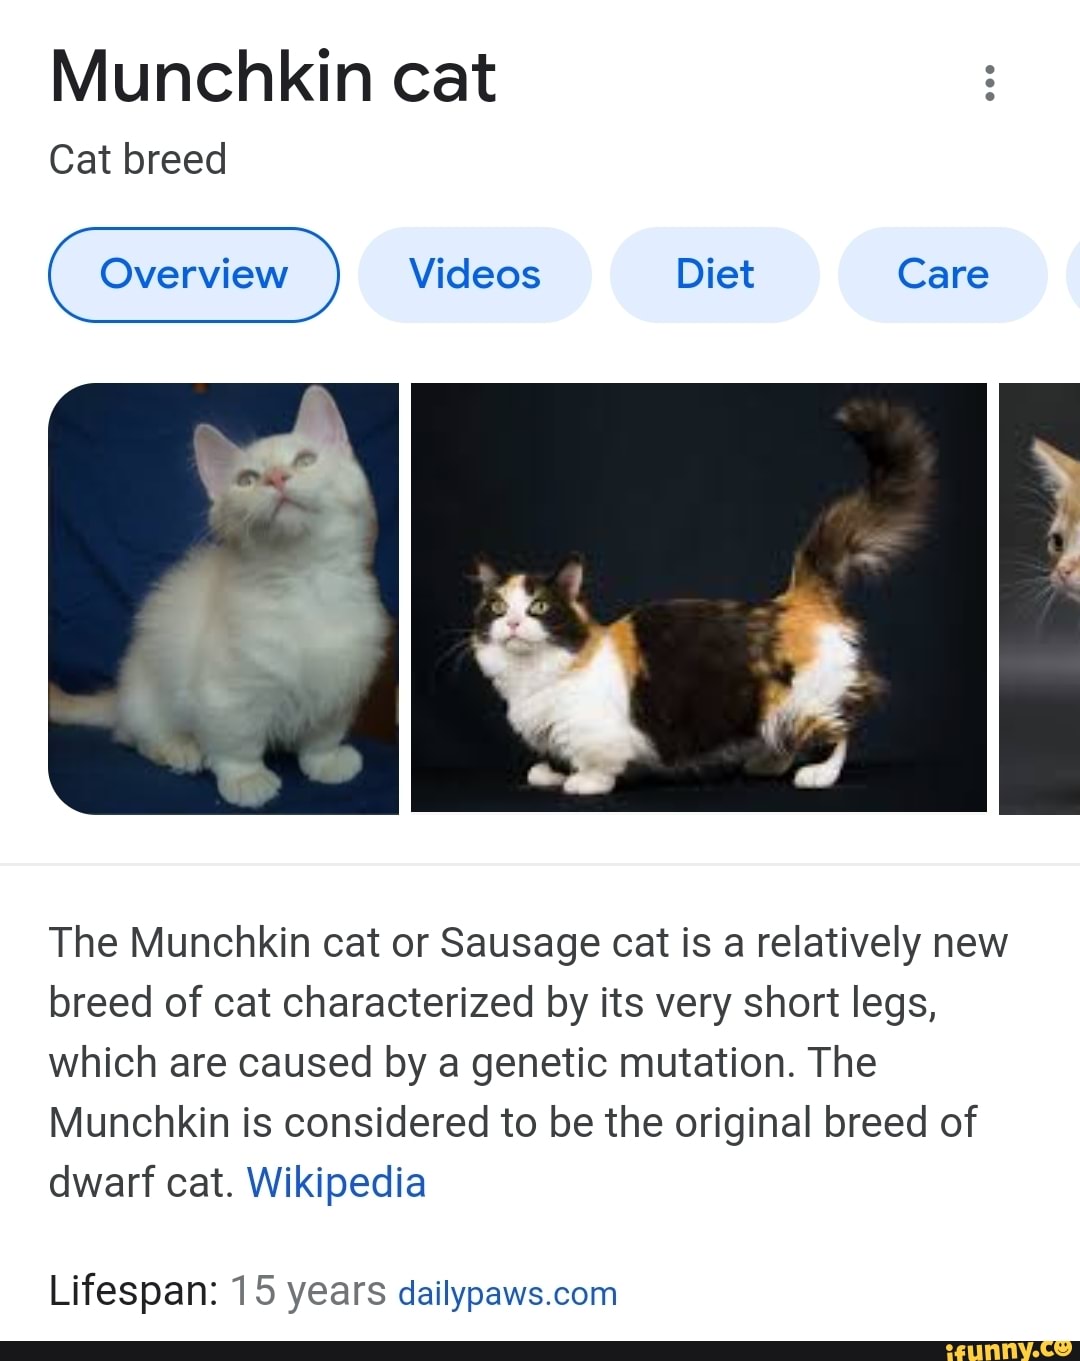 Munchkin - Wikipedia